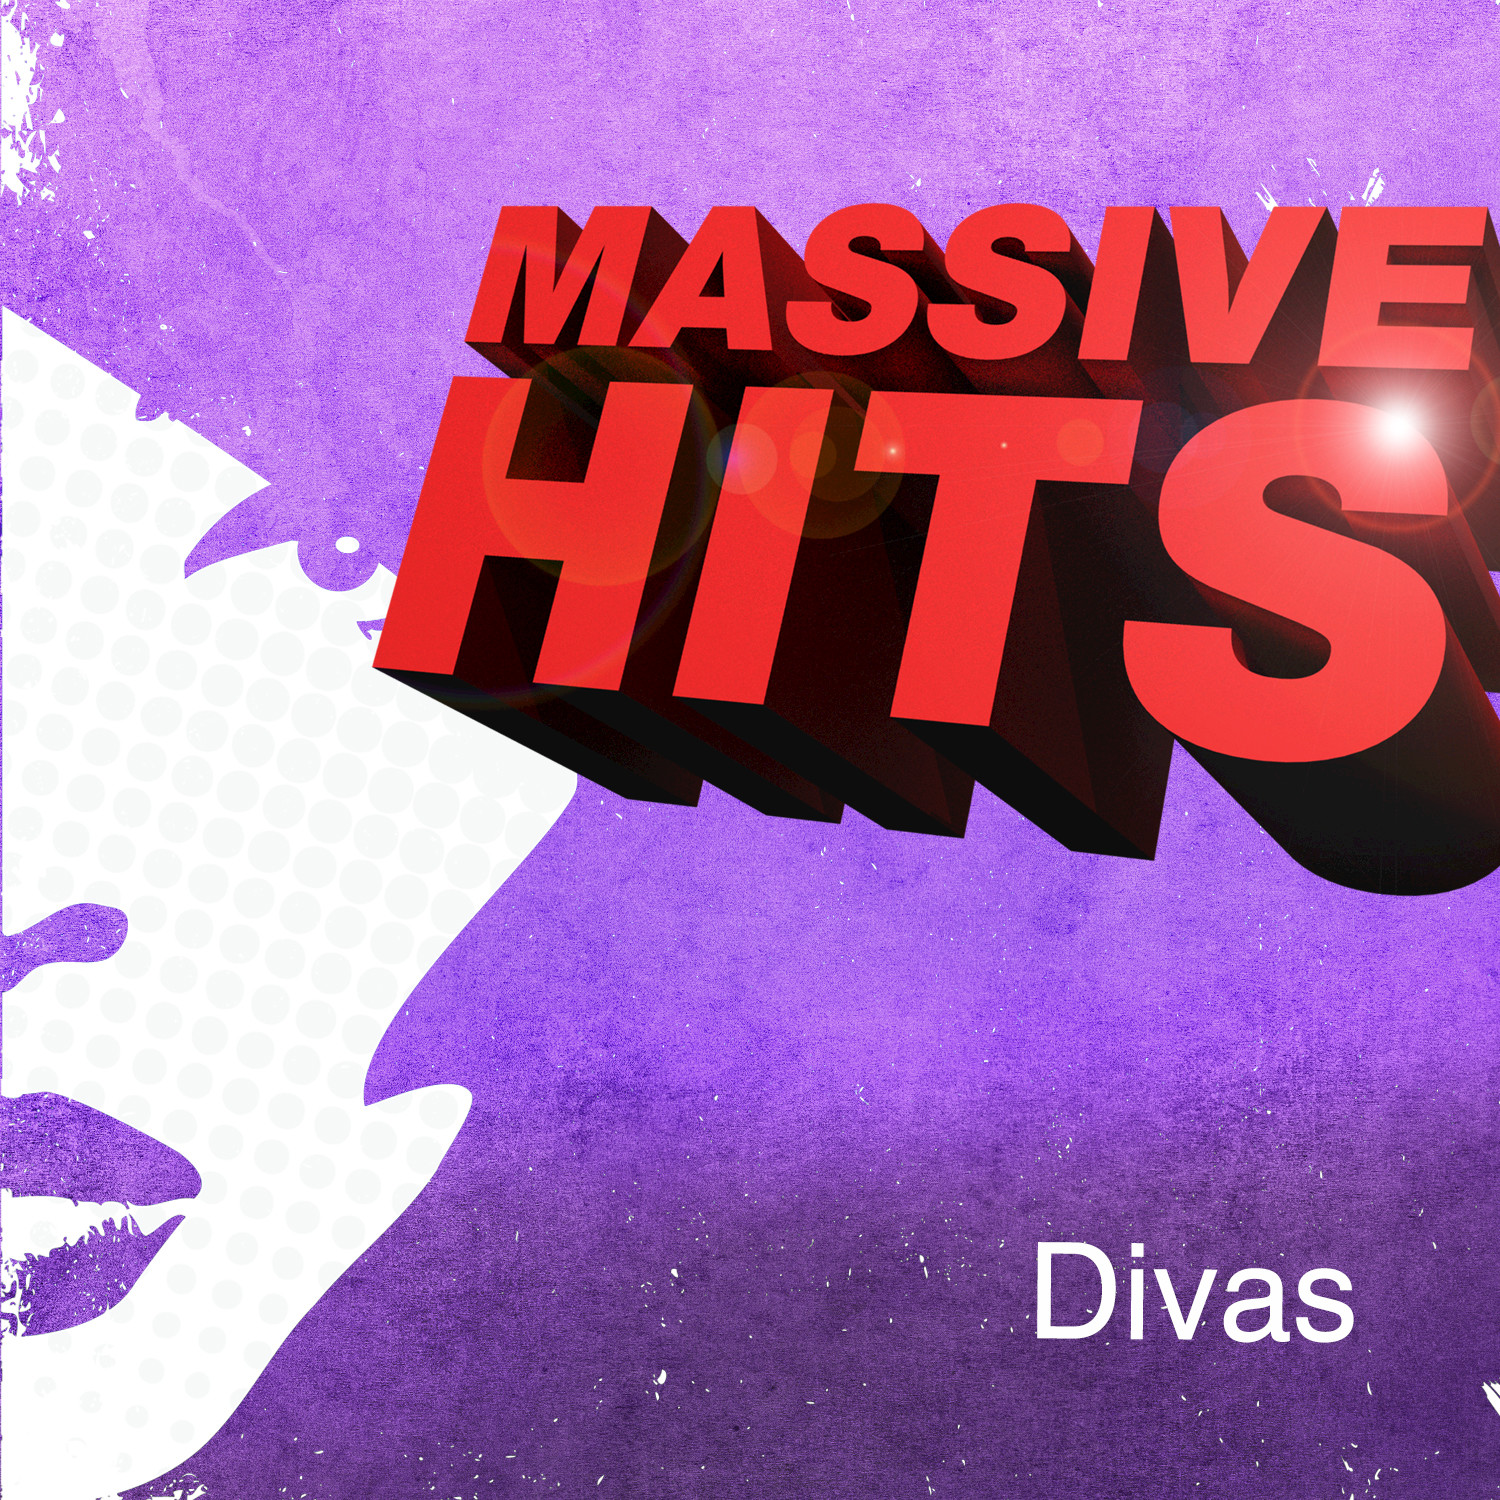 Massive Hits - Divas